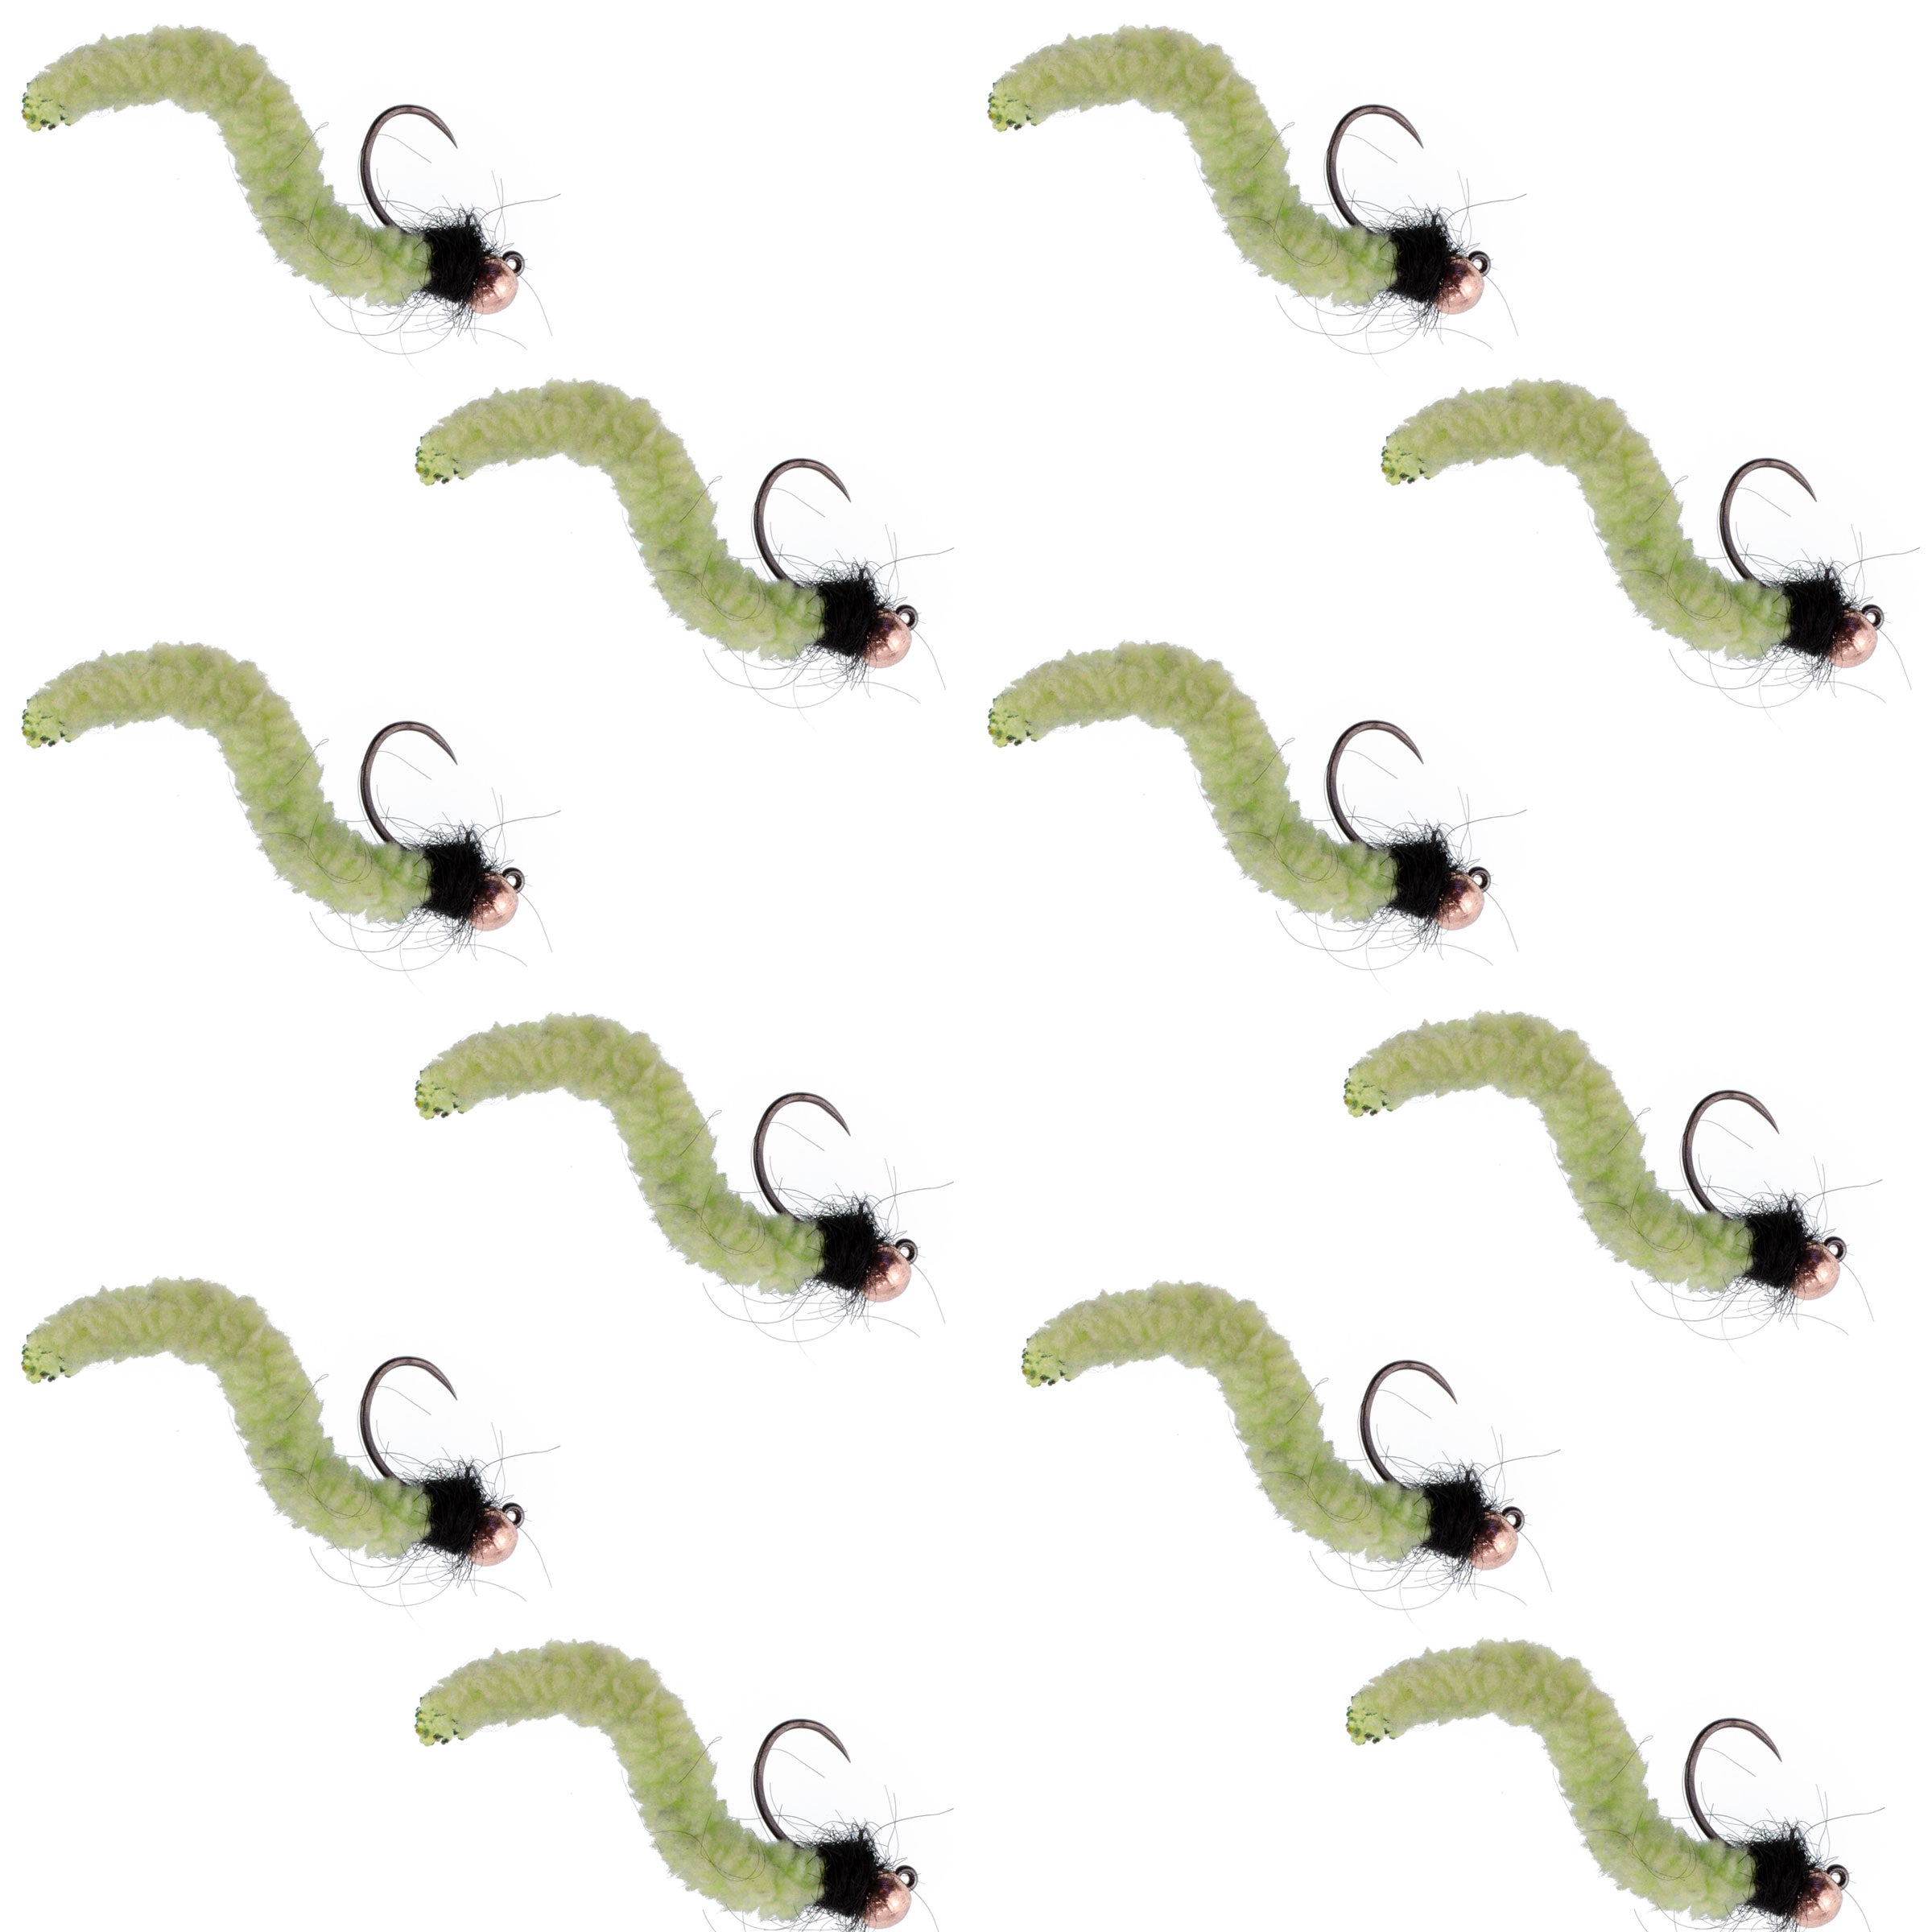 Cuentas de tungsteno Chartreuse Wormy Mop Fly plantilla táctica checa Euro Nymph Barbless Fly - 1 docena de moscas tamaño 14